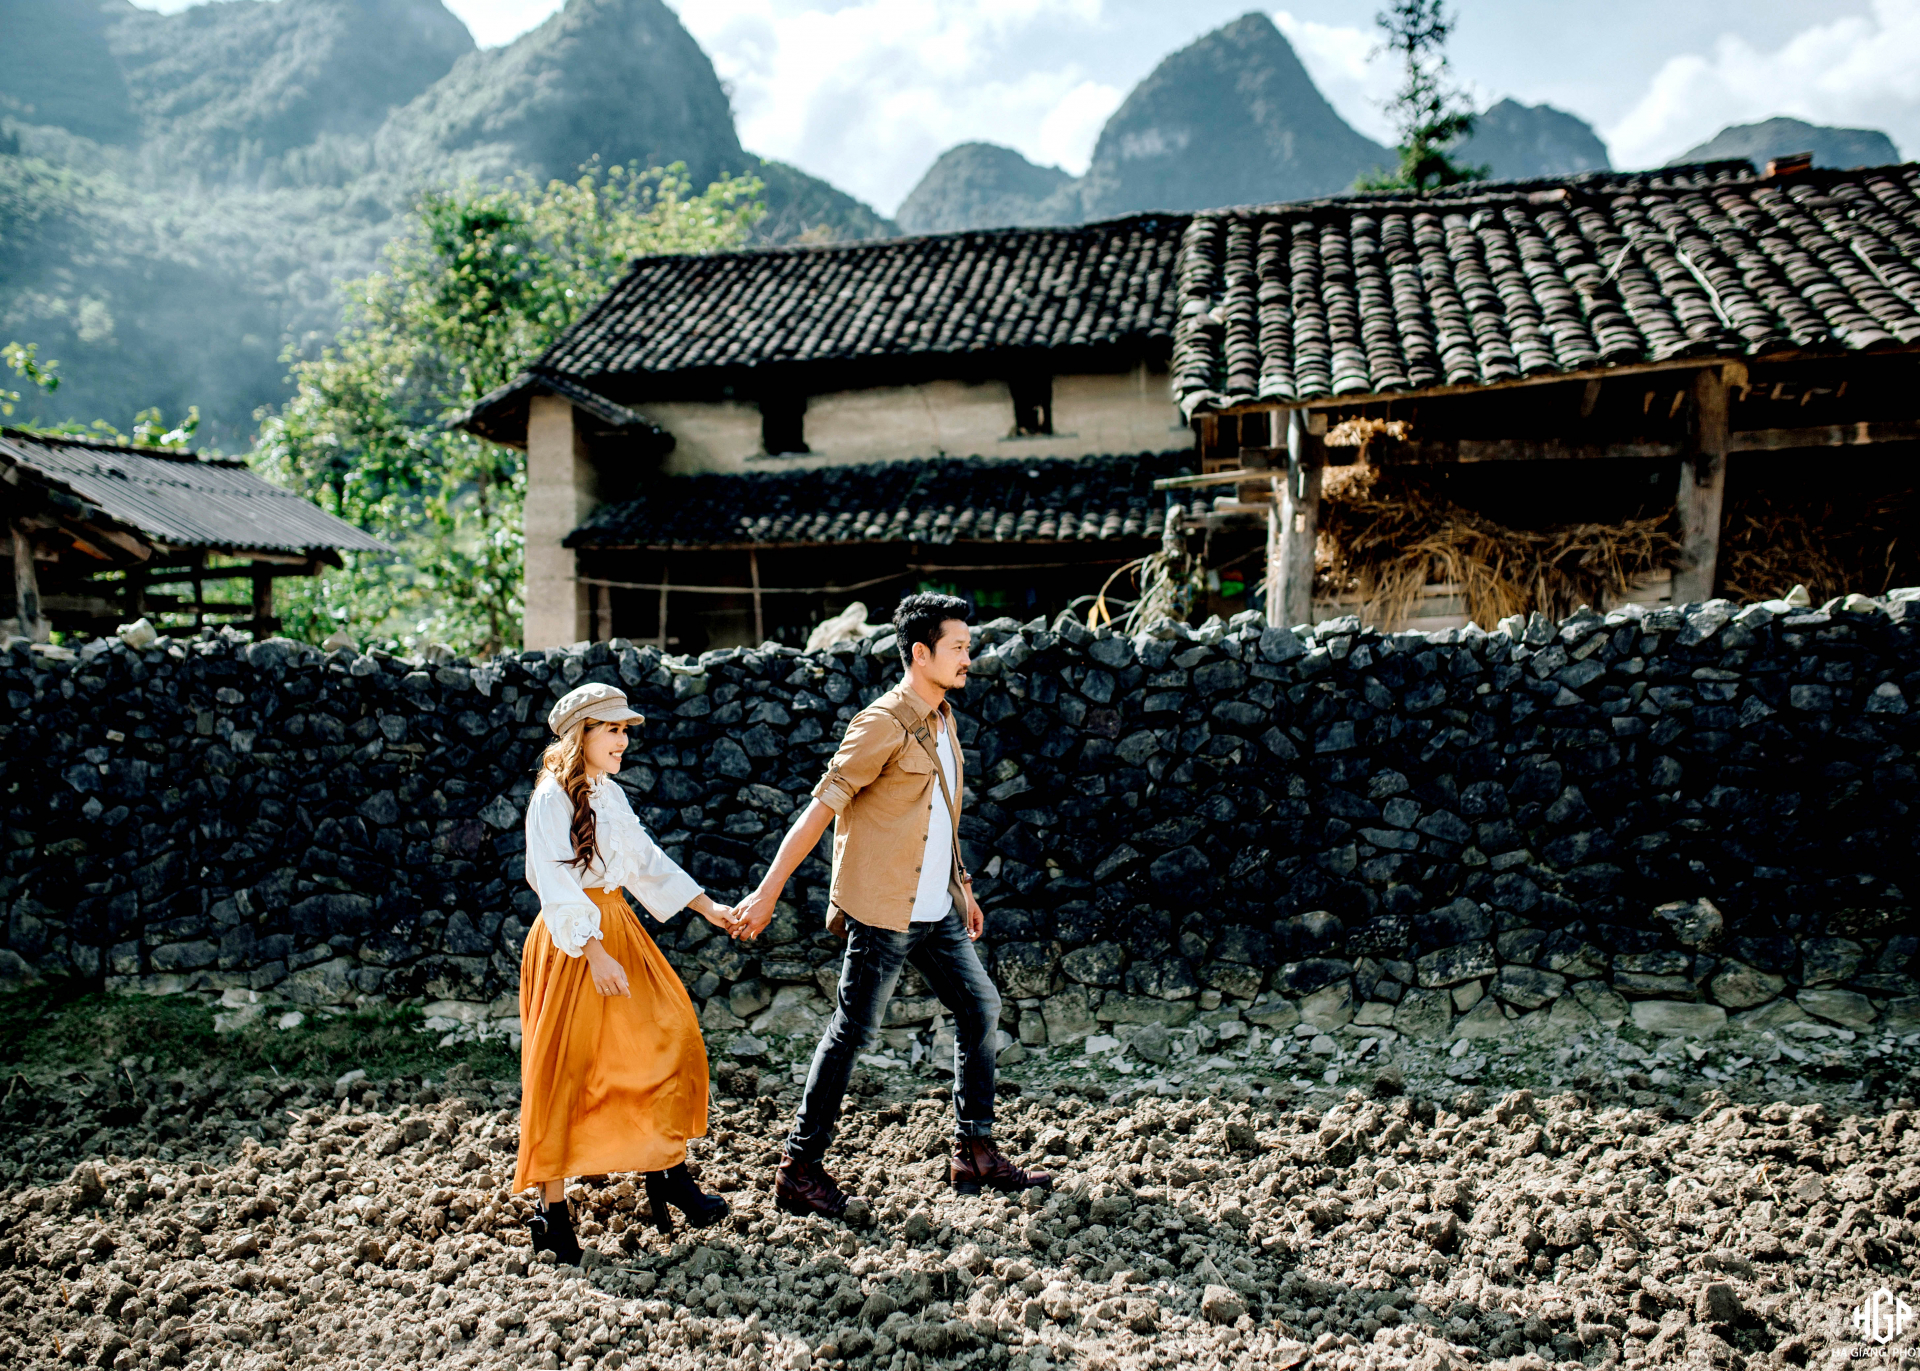 Trang phục đời thường được cặp đôi trú tại thành phố Buôn Ma Thuột, tỉnh Đắk Lắk lựa chọn để chụp với khung cảnh mái nhà ngói âm dương, bờ rào đá đặc trưng của người Mông.